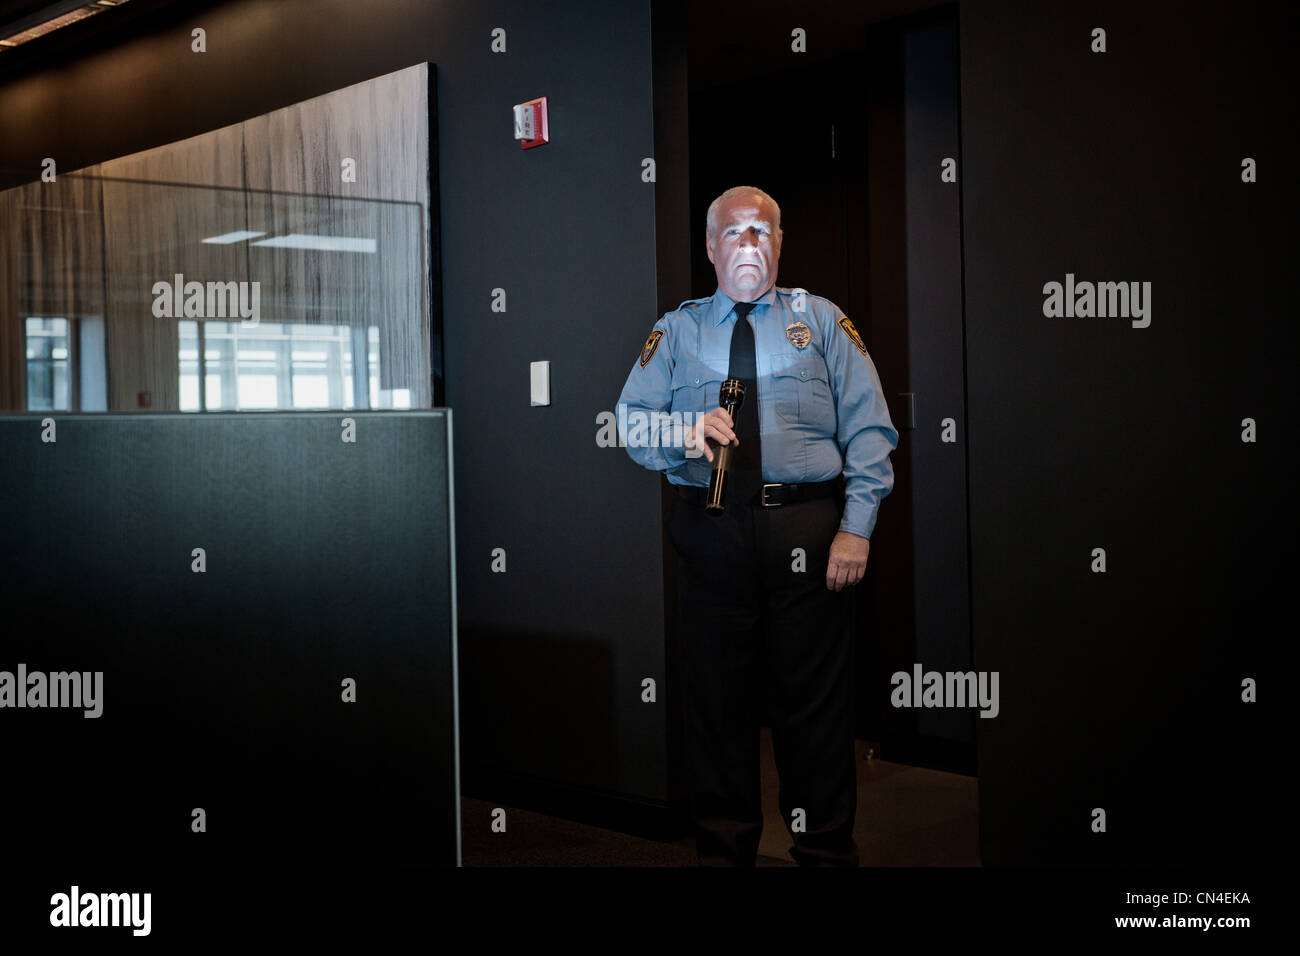 Security guard éclairant le visage avec torch Banque D'Images